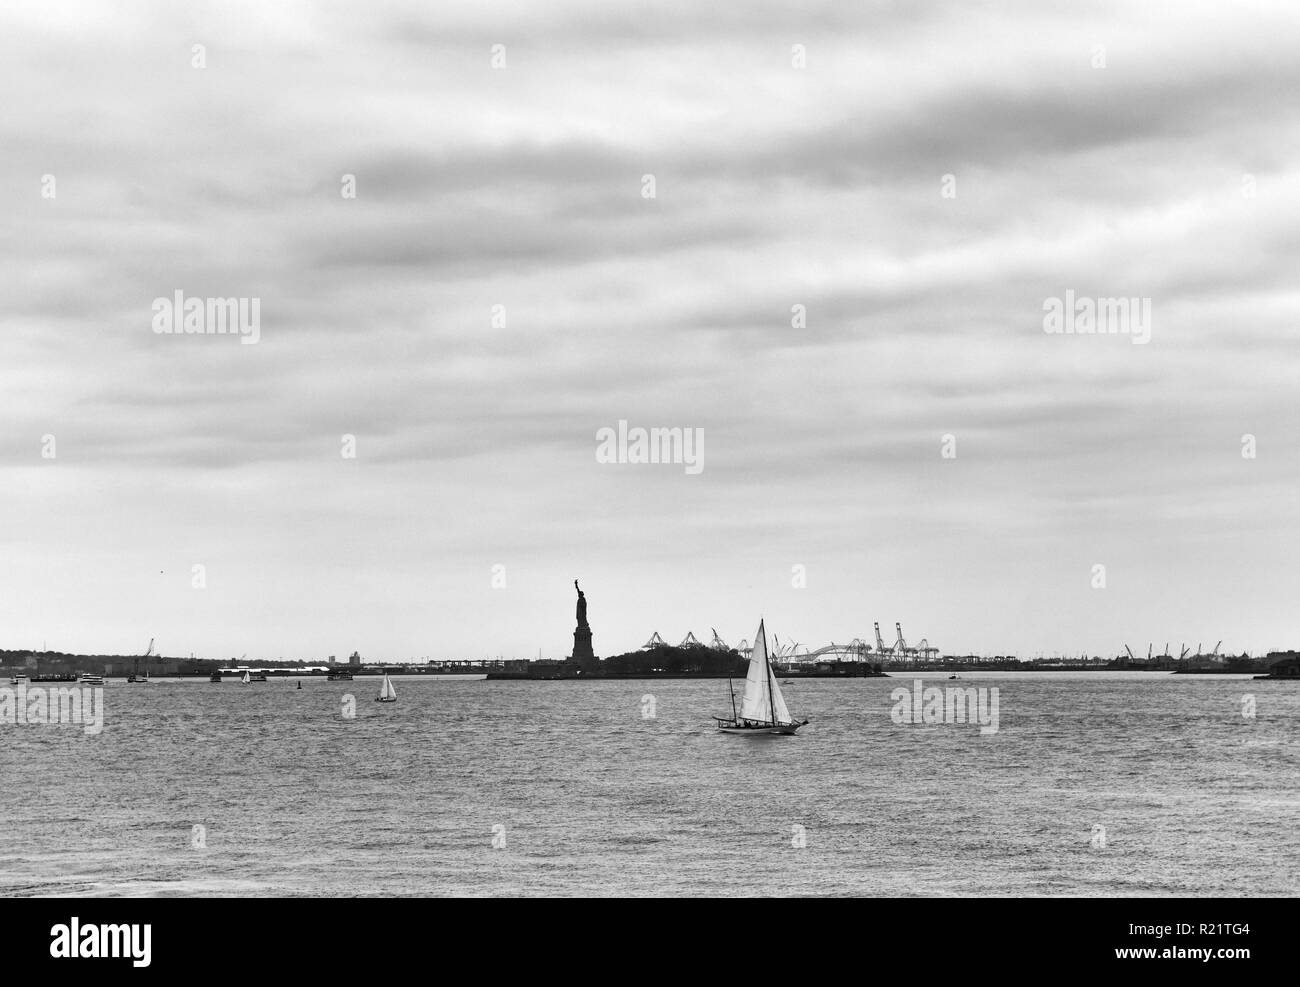 Statue of Liberty and yacht, New York City, NY, USA Stock Photo